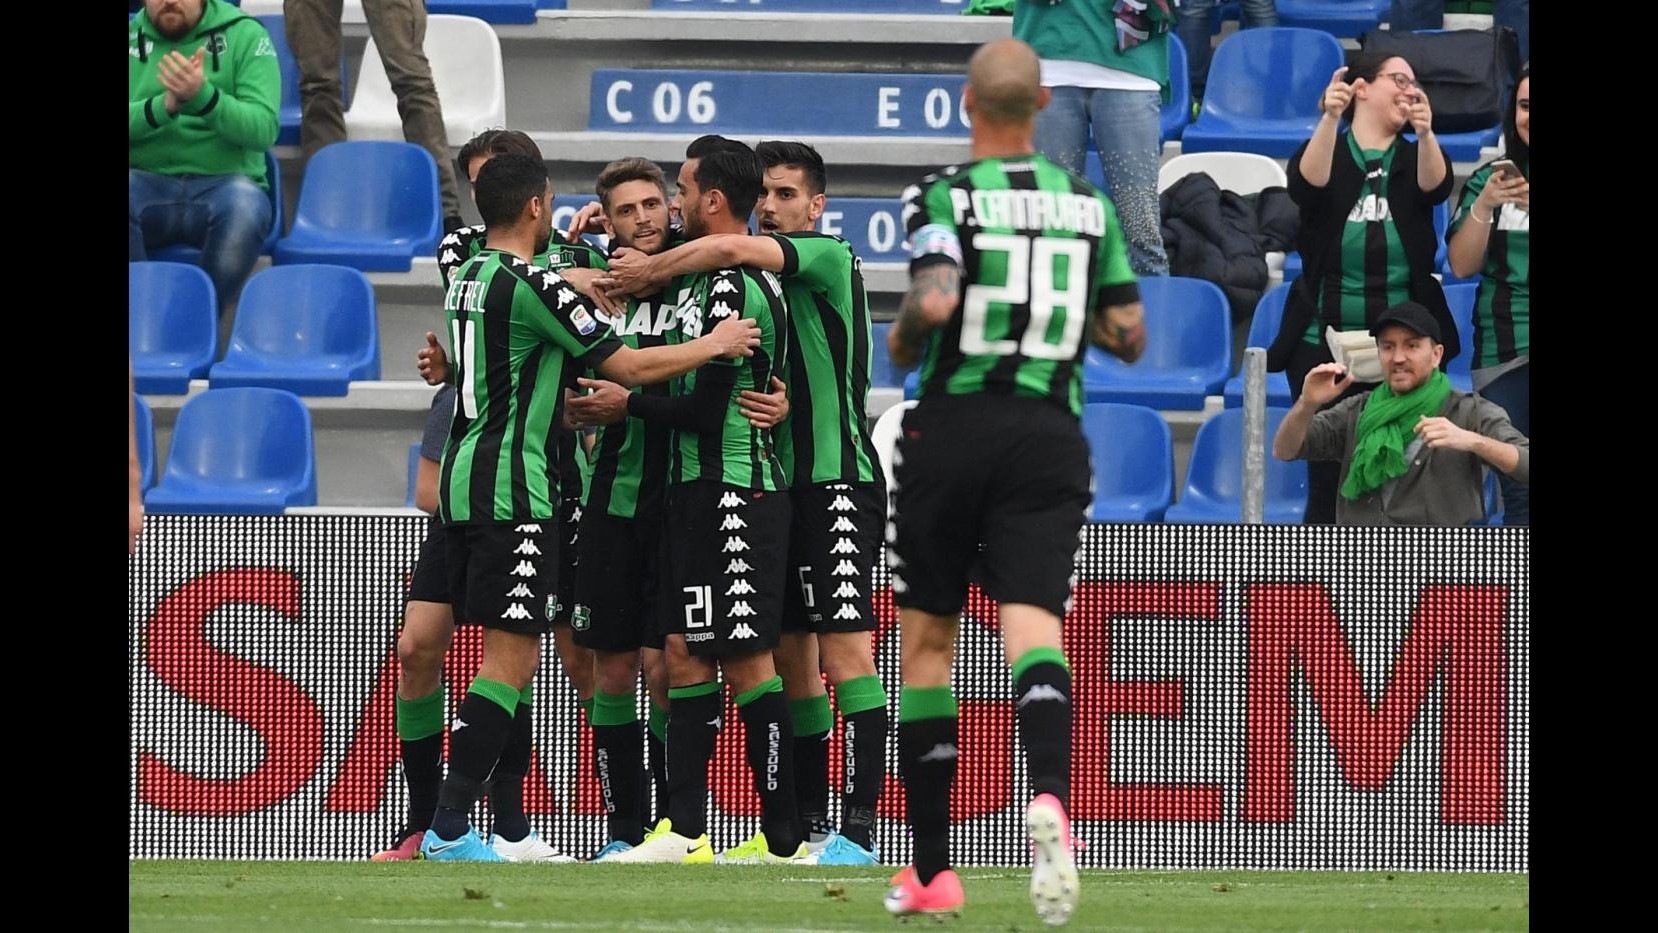 FOTO Serie A, colpo esterno della Lazio: Sassuolo ko 2-1